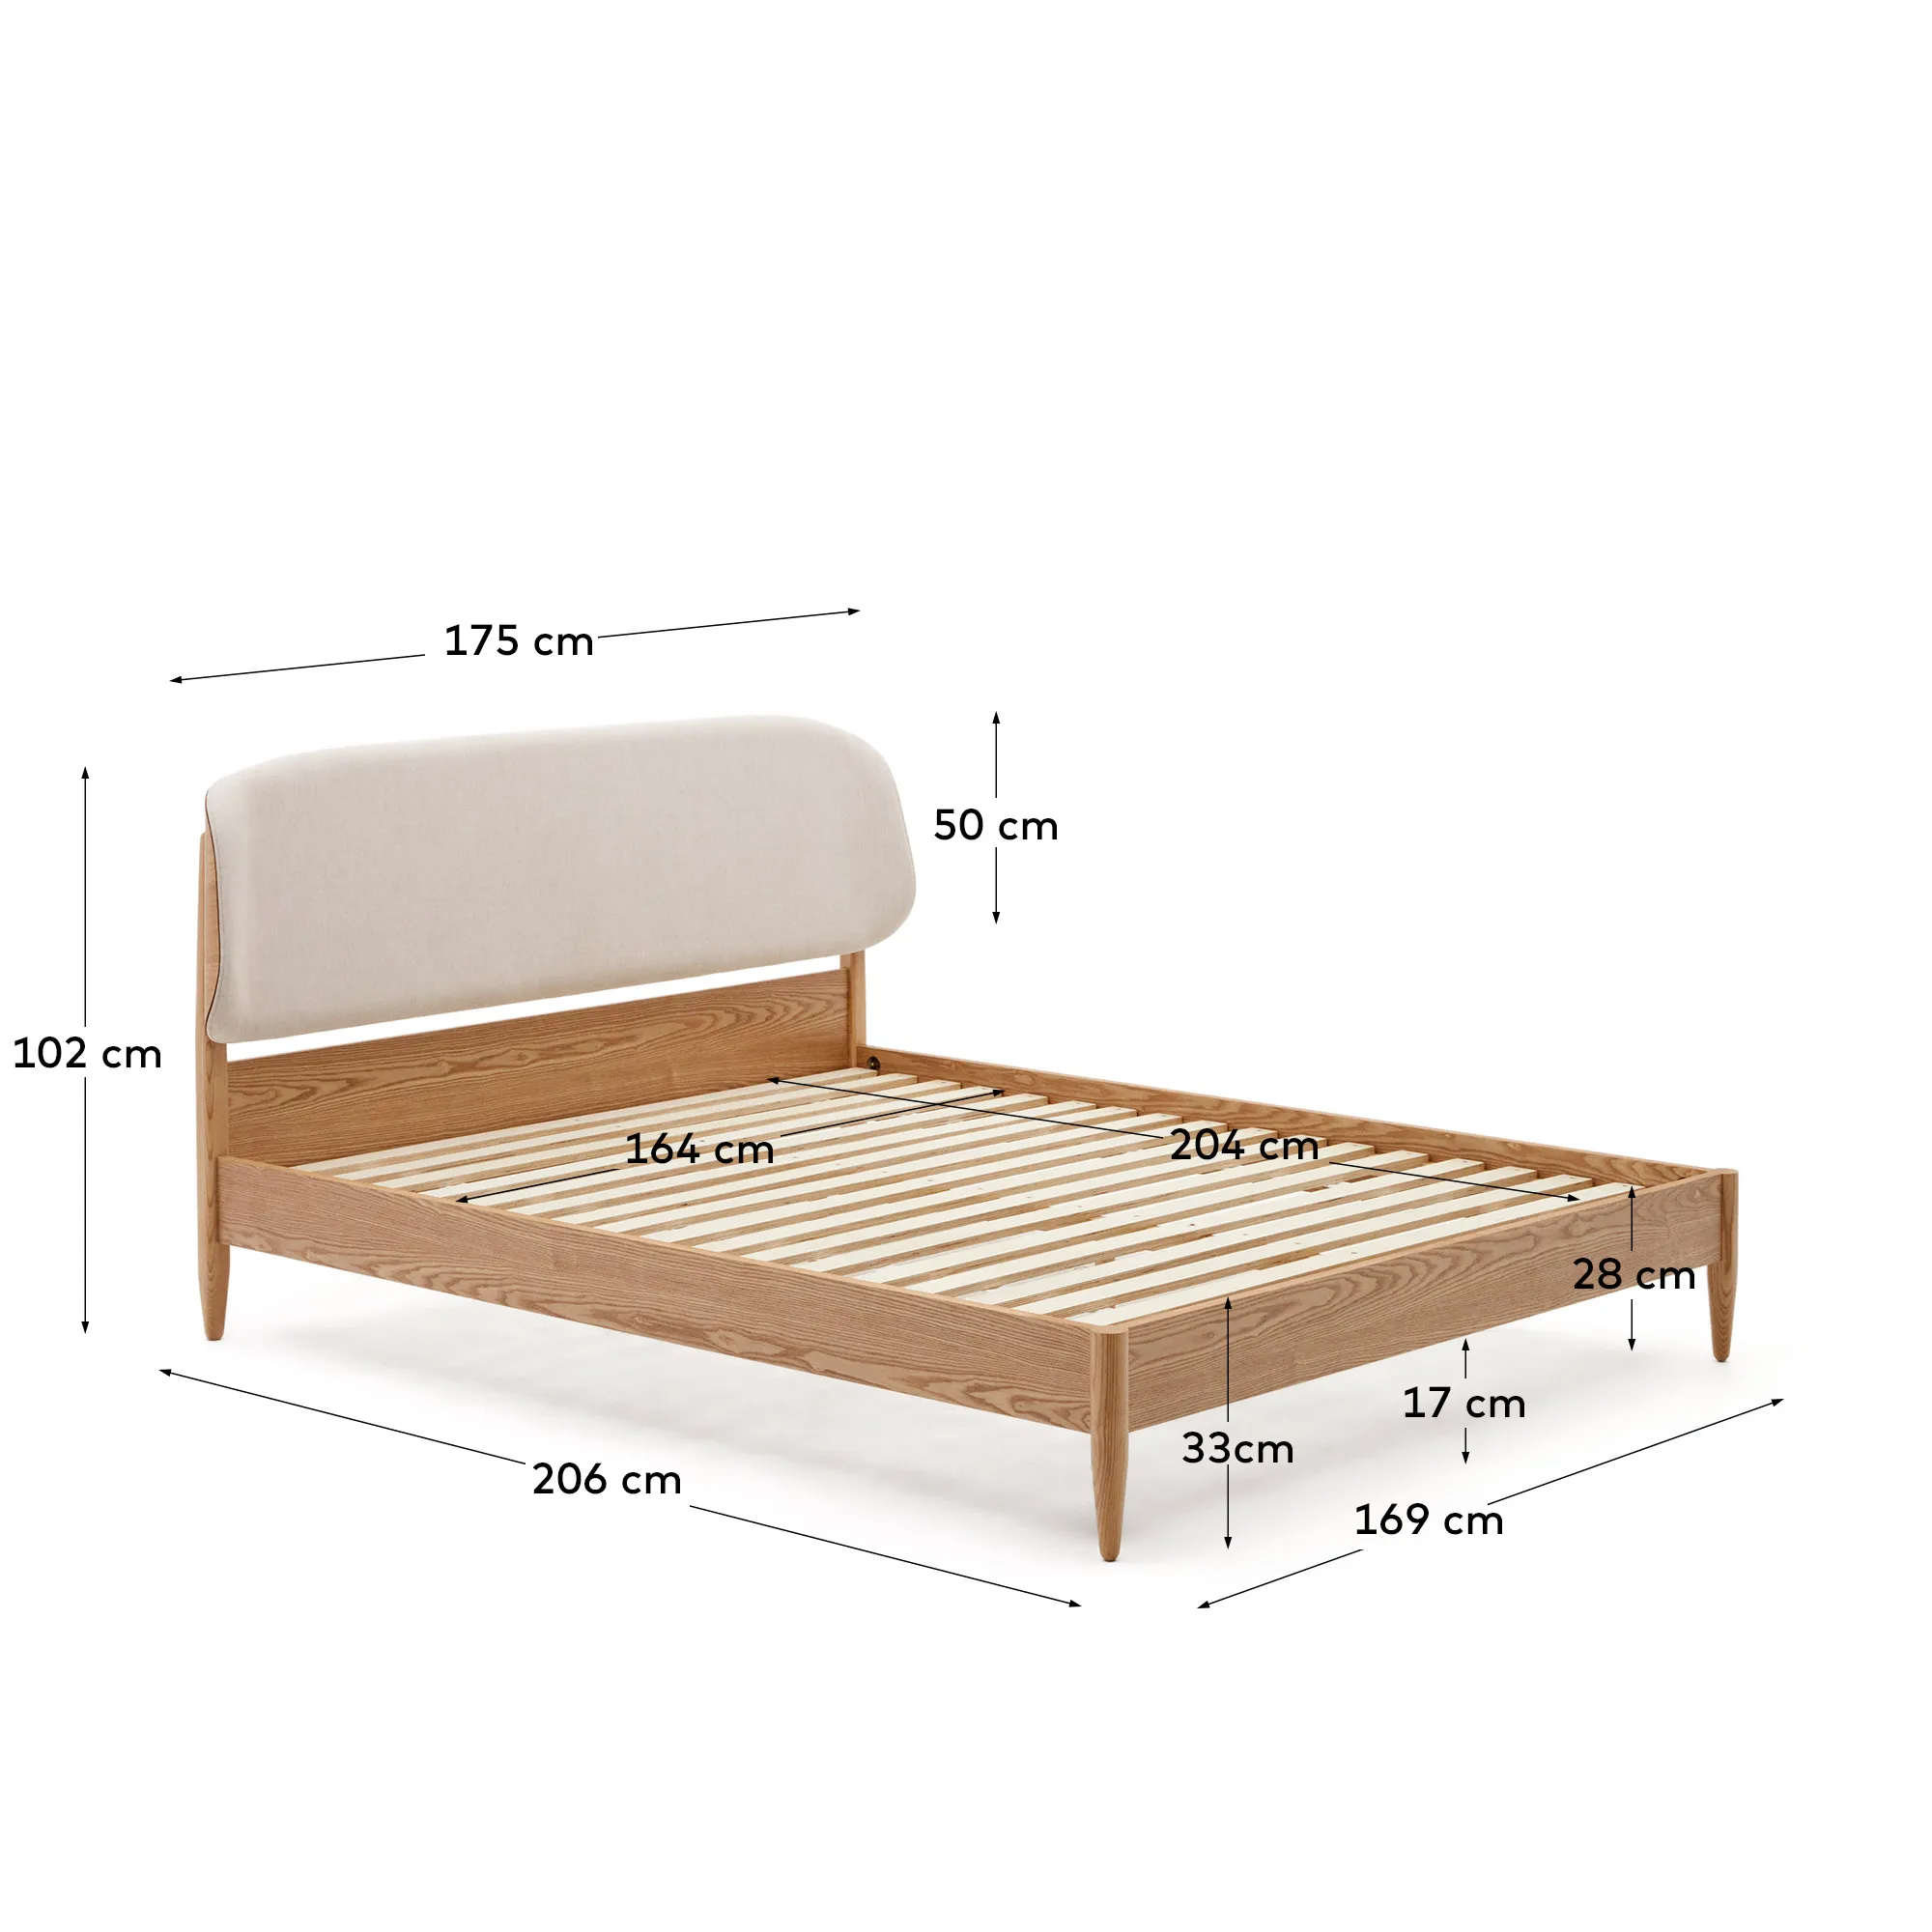 Двуспальная кровать La Forma Octavia ясень с белым мягким изголовьем 178340